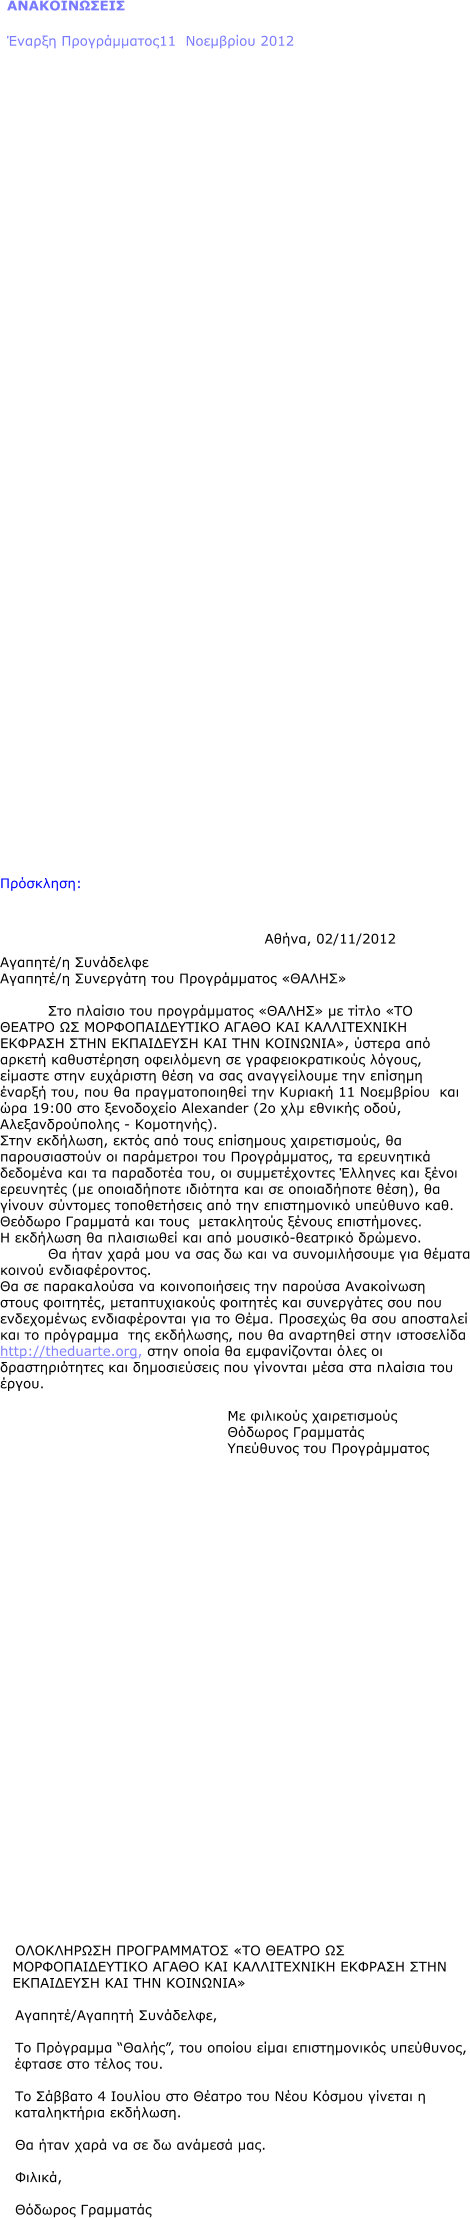 ΑΝΑΚΟΙΝΩΣΕΙΣ Έναρξη Προγράμματος11  Νοεμβρίου 2012                                   Πρόσκληση:  							Αθήνα, 02/11/2012 Αγαπητέ/η Συνάδελφε Αγαπητέ/η Συνεργάτη του Προγράμματος «ΘΑΛΗΣ»  Στο πλαίσιο του προγράμματος «ΘΑΛΗΣ» με τίτλο «ΤΟ ΘΕΑΤΡΟ ΩΣ ΜΟΡΦΟΠΑΙΔΕΥΤΙΚΟ ΑΓΑΘΟ ΚΑΙ ΚΑΛΛΙΤΕΧΝΙΚΗ ΕΚΦΡΑΣΗ ΣΤΗΝ ΕΚΠΑΙΔΕΥΣΗ ΚΑΙ ΤΗΝ ΚΟΙΝΩΝΙΑ», ύστερα από αρκετή καθυστέρηση οφειλόμενη σε γραφειοκρατικούς λόγους, είμαστε στην ευχάριστη θέση να σας αναγγείλουμε την επίσημη  έναρξή του, που θα πραγματοποιηθεί την Κυριακή 11 Νοεμβρίου  και ώρα 19:00 στο ξενοδοχείο Alexander (2o χλμ εθνικής οδού, Αλεξανδρούπολης - Κομοτηνής). Στην εκδήλωση, εκτός από τους επίσημους χαιρετισμούς, θα παρουσιαστούν οι παράμετροι του Προγράμματος, τα ερευνητικά δεδομένα και τα παραδοτέα του, οι συμμετέχοντες Έλληνες και ξένοι ερευνητές (με οποιαδήποτε ιδιότητα και σε οποιαδήποτε θέση), θα γίνουν σύντομες τοποθετήσεις από την επιστημονικό υπεύθυνο καθ. Θεόδωρο Γραμματά και τους  μετακλητούς ξένους επιστήμονες.  Η εκδήλωση θα πλαισιωθεί και από μουσικό-θεατρικό δρώμενο. Θα ήταν χαρά μου να σας δω και να συνομιλήσουμε για θέματα κοινού ενδιαφέροντος. Θα σε παρακαλούσα να κοινοποιήσεις την παρούσα Ανακοίνωση  στους φοιτητές, μεταπτυχιακούς φοιτητές και συνεργάτες σου που ενδεχομένως ενδιαφέρονται για το Θέμα. Προσεχώς θα σου αποσταλεί και το πρόγραμμα  της εκδήλωσης, που θα αναρτηθεί στην ιστοσελίδα http://theduarte.org, στην οποία θα εμφανίζονται όλες οι δραστηριότητες και δημοσιεύσεις που γίνονται μέσα στα πλαίσια του έργου.     Με φιλικούς χαιρετισμούς  Θόδωρος Γραμματάς Υπεύθυνος του Προγράμματος                               ΟΛΟΚΛΗΡΩΣΗ ΠΡΟΓΡΑΜΜΑΤΟΣ «ΤΟ ΘΕΑΤΡΟ ΩΣ ΜΟΡΦΟΠΑΙΔΕΥΤΙΚΟ ΑΓΑΘΟ ΚΑΙ ΚΑΛΛΙΤΕΧΝΙΚΗ ΕΚΦΡΑΣΗ ΣΤΗΝ ΕΚΠΑΙΔΕΥΣΗ ΚΑΙ ΤΗΝ ΚΟΙΝΩΝΙΑ»  Αγαπητέ/Αγαπητή Συνάδελφε,  Το Πρόγραμμα “Θαλής”, του οποίου είμαι επιστημονικός υπεύθυνος, έφτασε στο τέλος του.  Το Σάββατο 4 Ιουλίου στο Θέατρο του Νέου Κόσμου γίνεται η καταληκτήρια εκδήλωση.  Θα ήταν χαρά να σε δω ανάμεσά μας.  Φιλικά,  Θόδωρος Γραμματάς